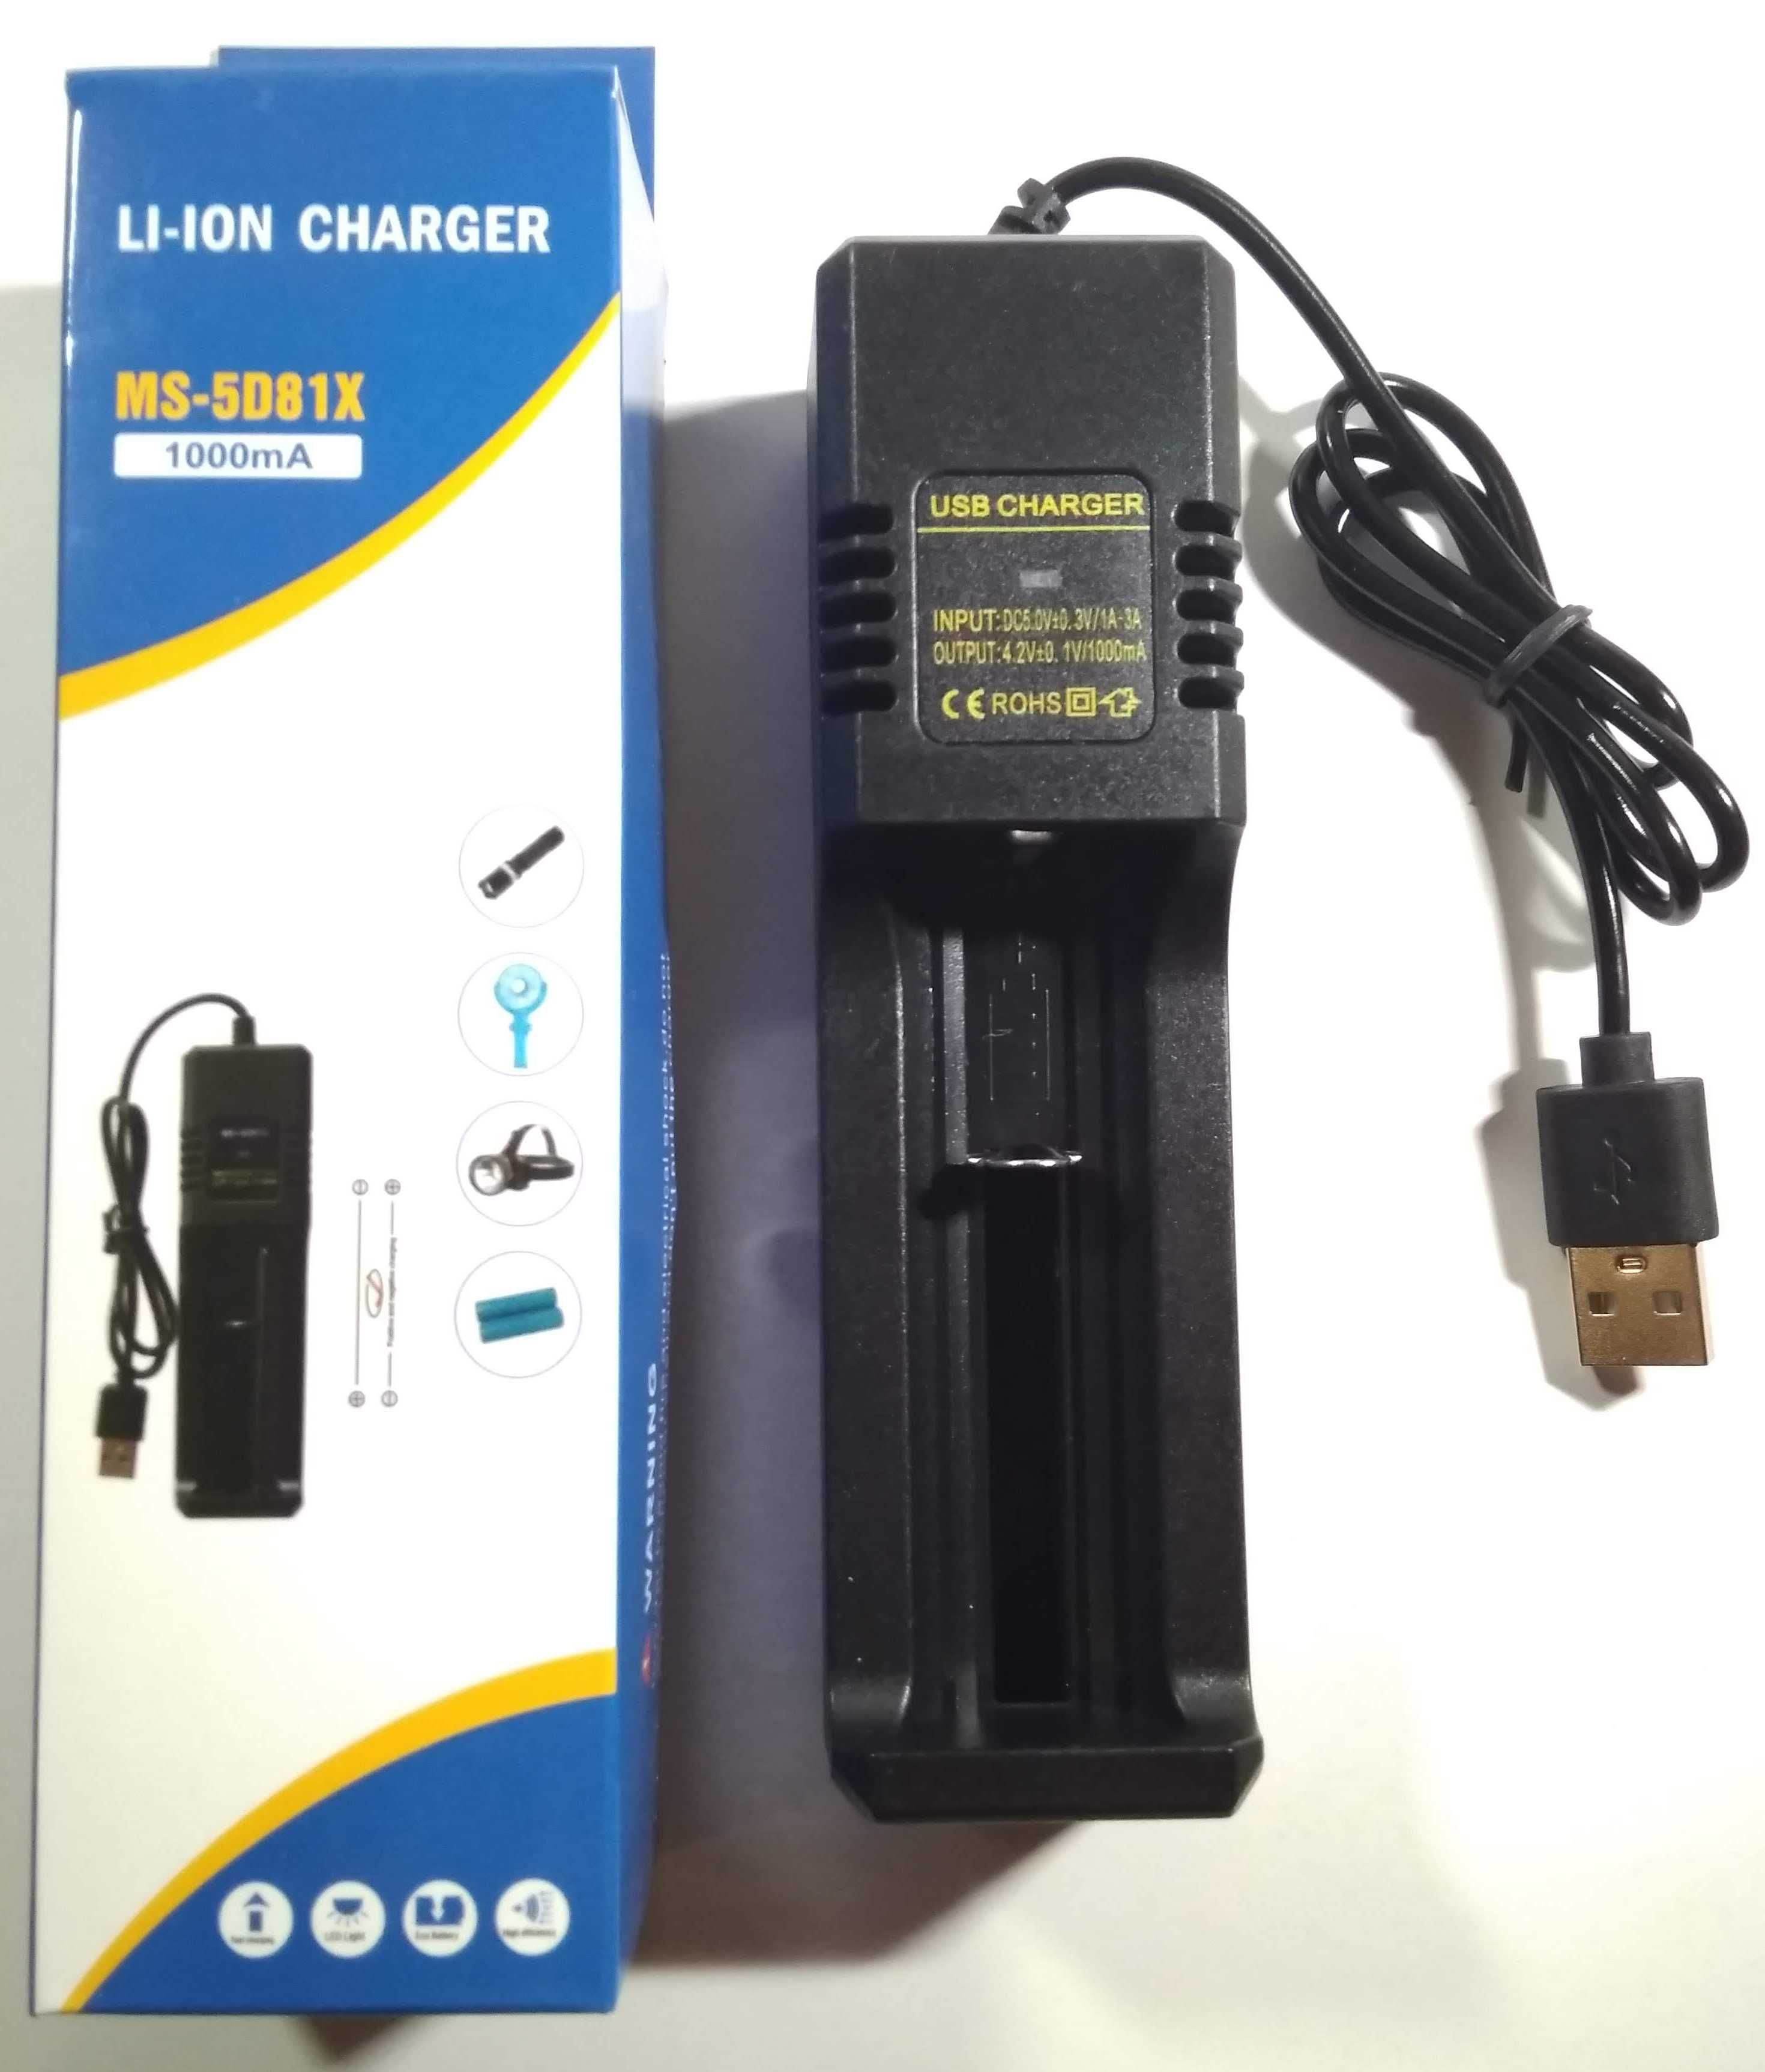 Зарядное USB устройство для Li-ion аккумуляторов MS 5D81X